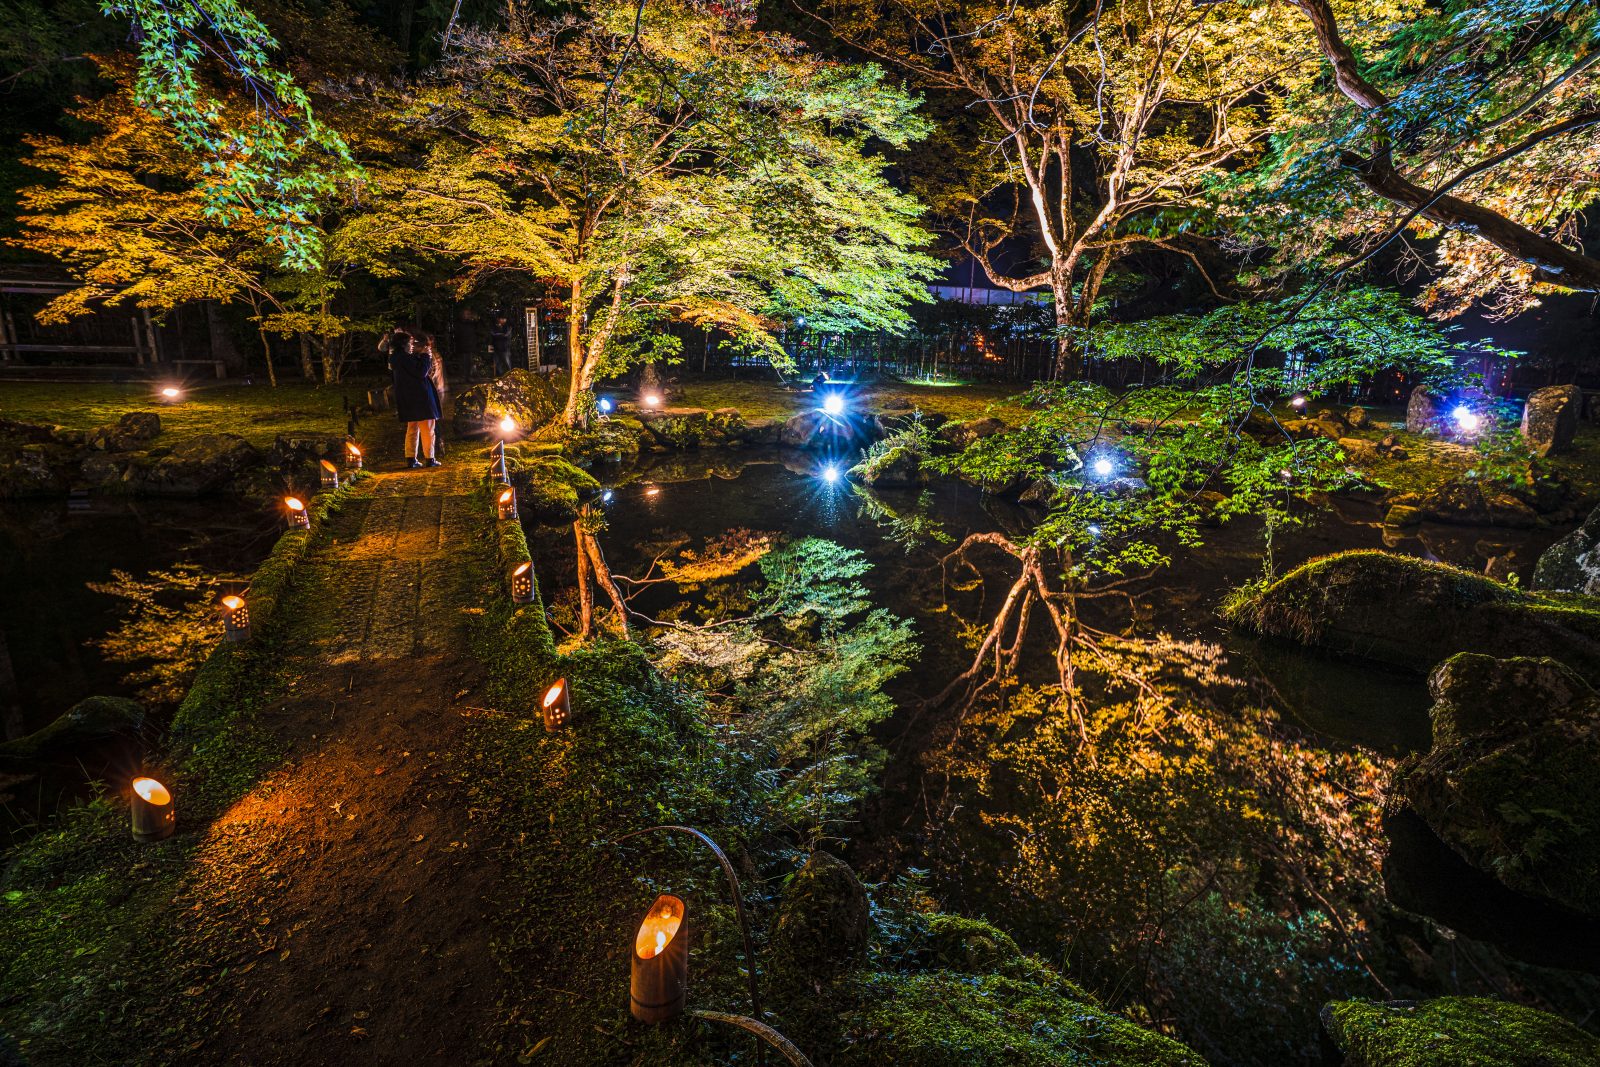 北畠神社の写真「水面に映る紅葉の庭園」